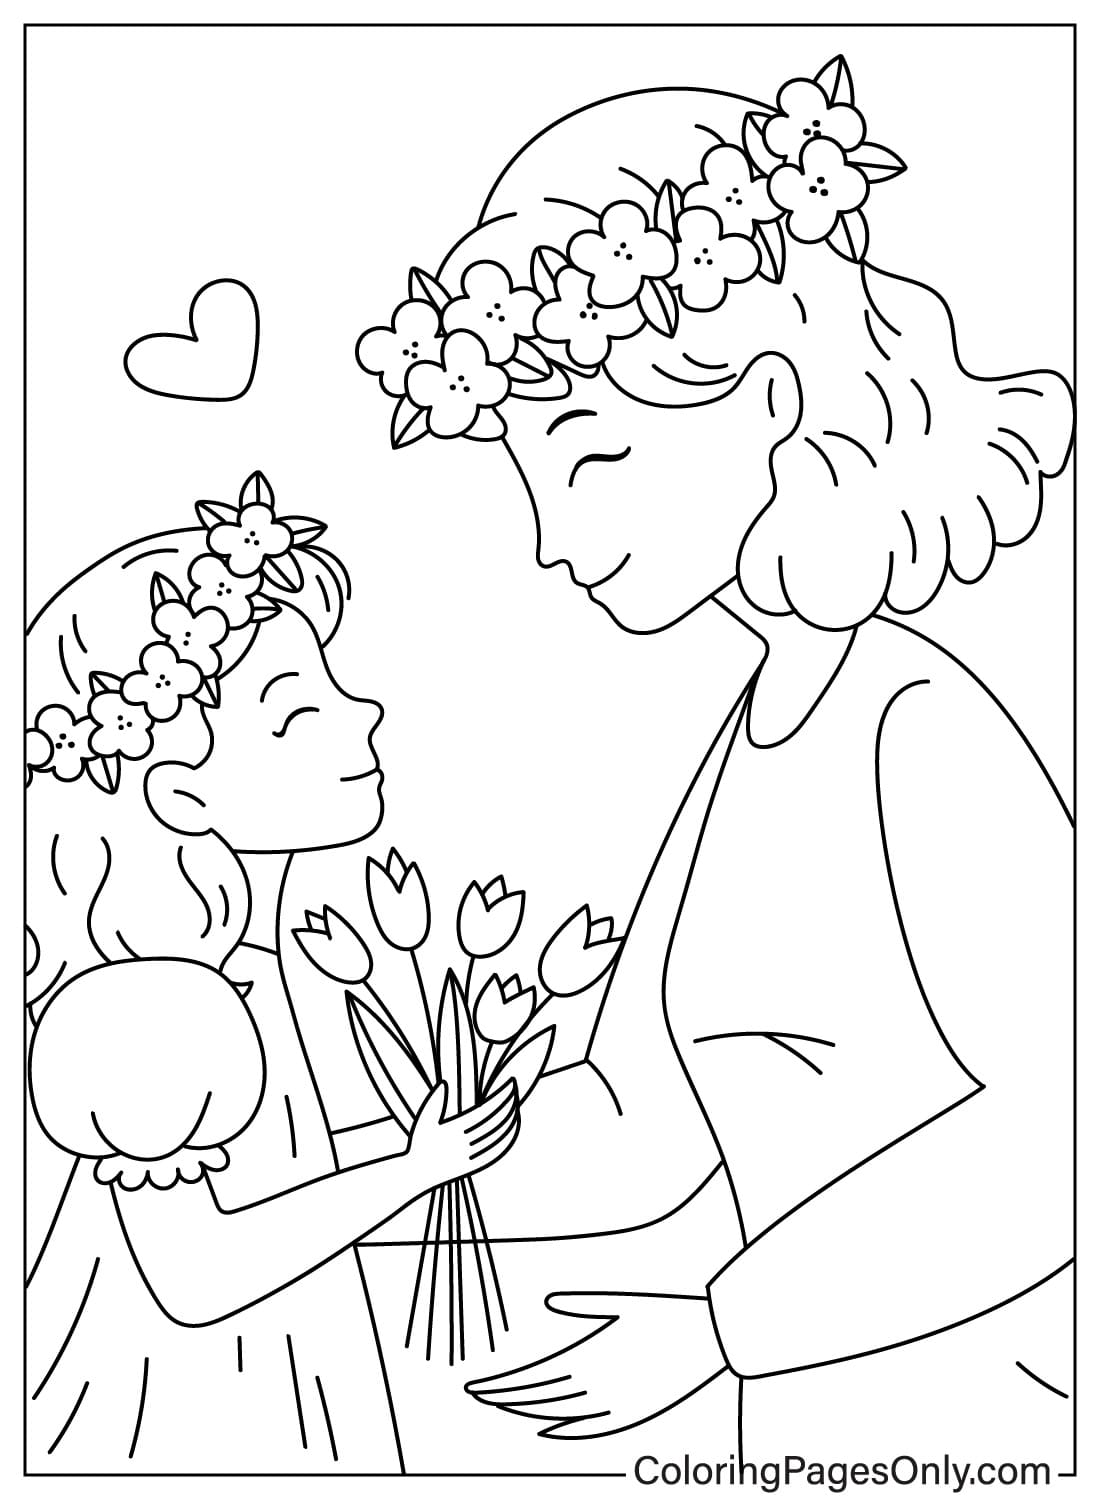 Filha dá flores para a mãe no Dia das Mães